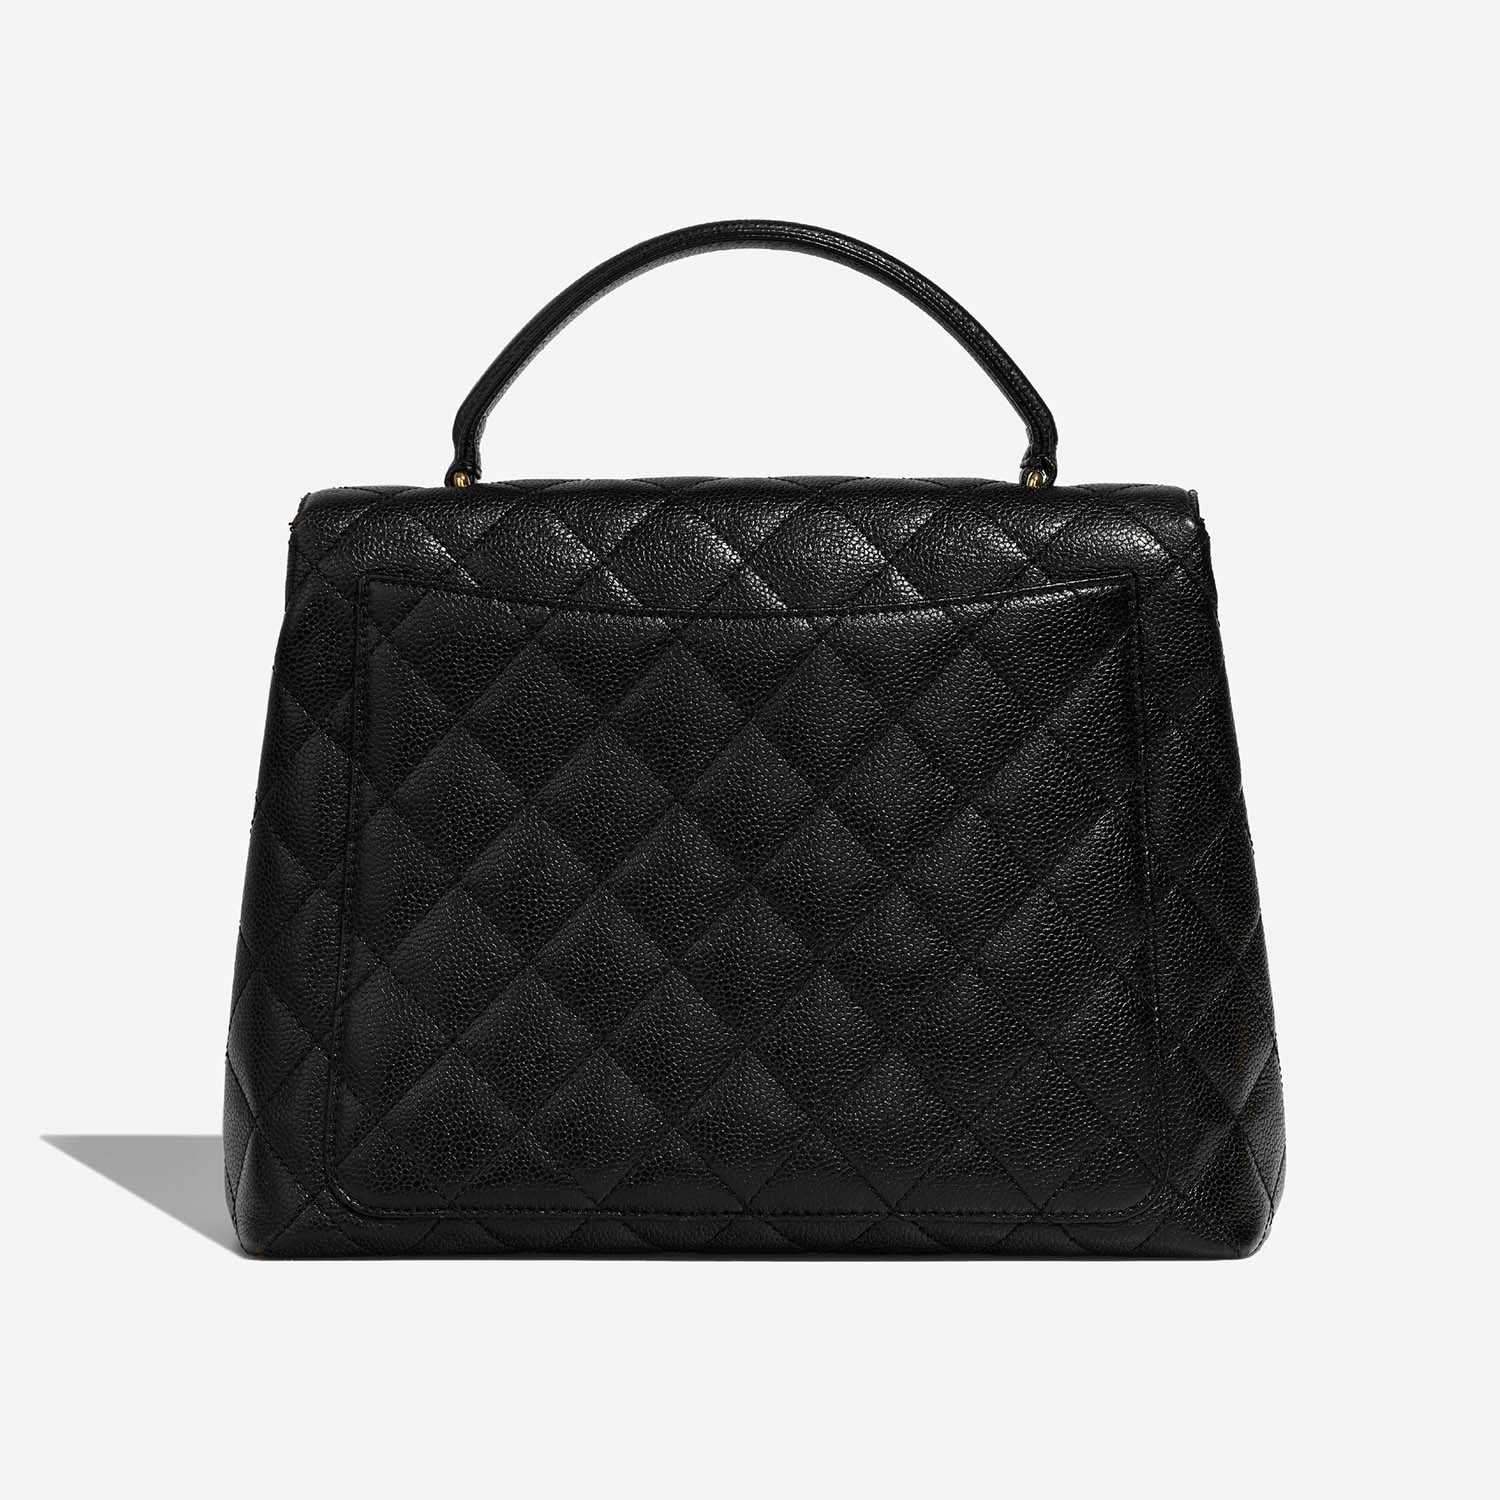 Chanel TimelessHandle Large Black Back | Verkaufen Sie Ihre Designer-Tasche auf Saclab.com